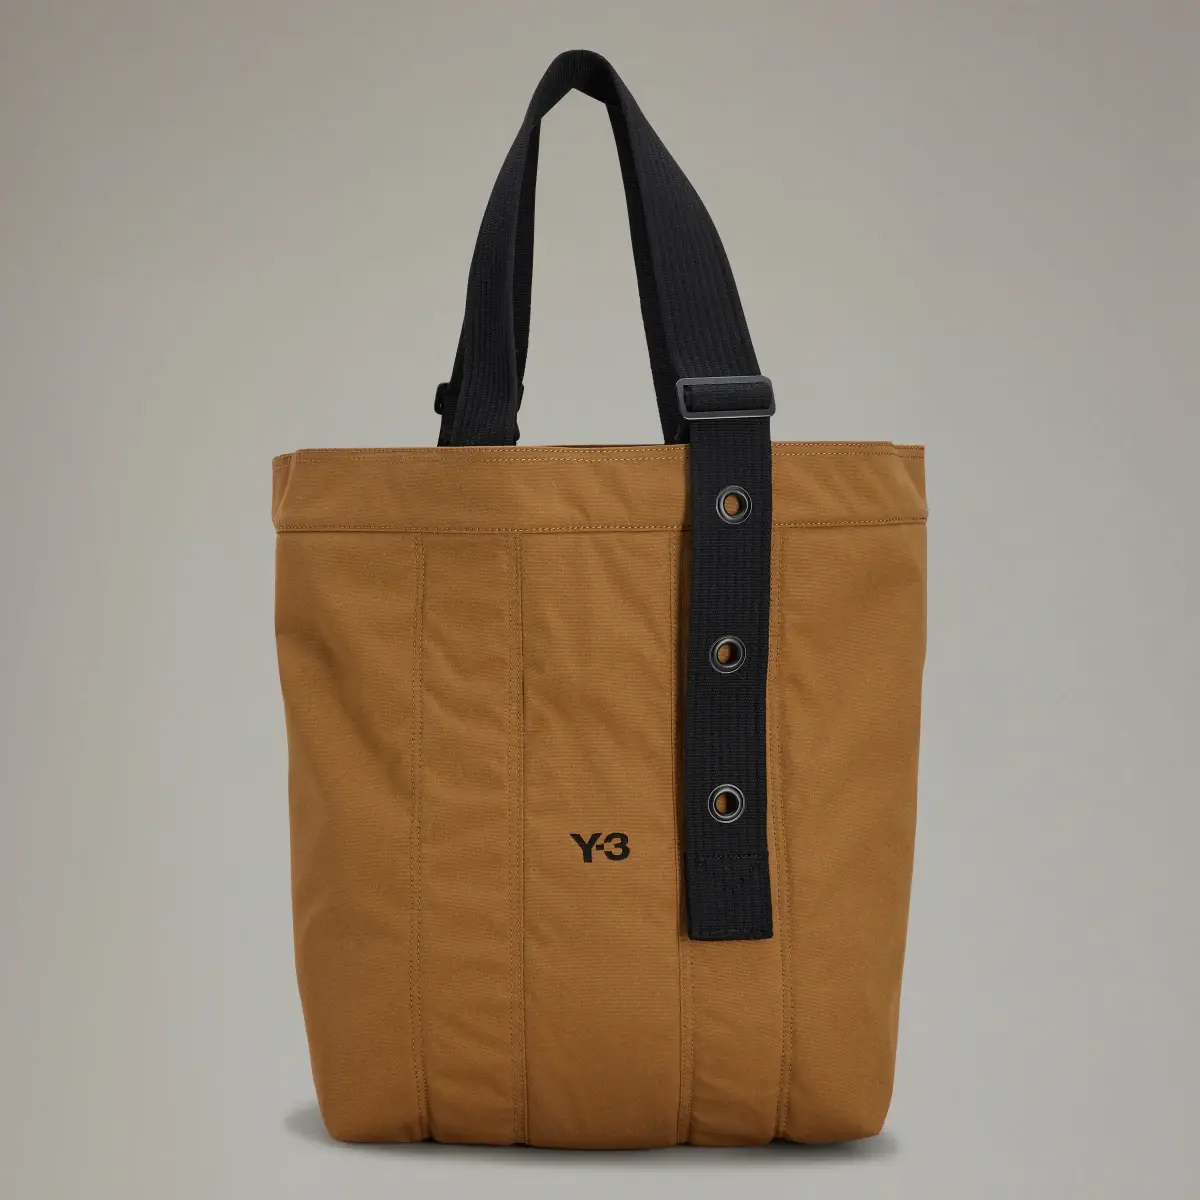 Adidas Y-3 Shoulder Bag. 1